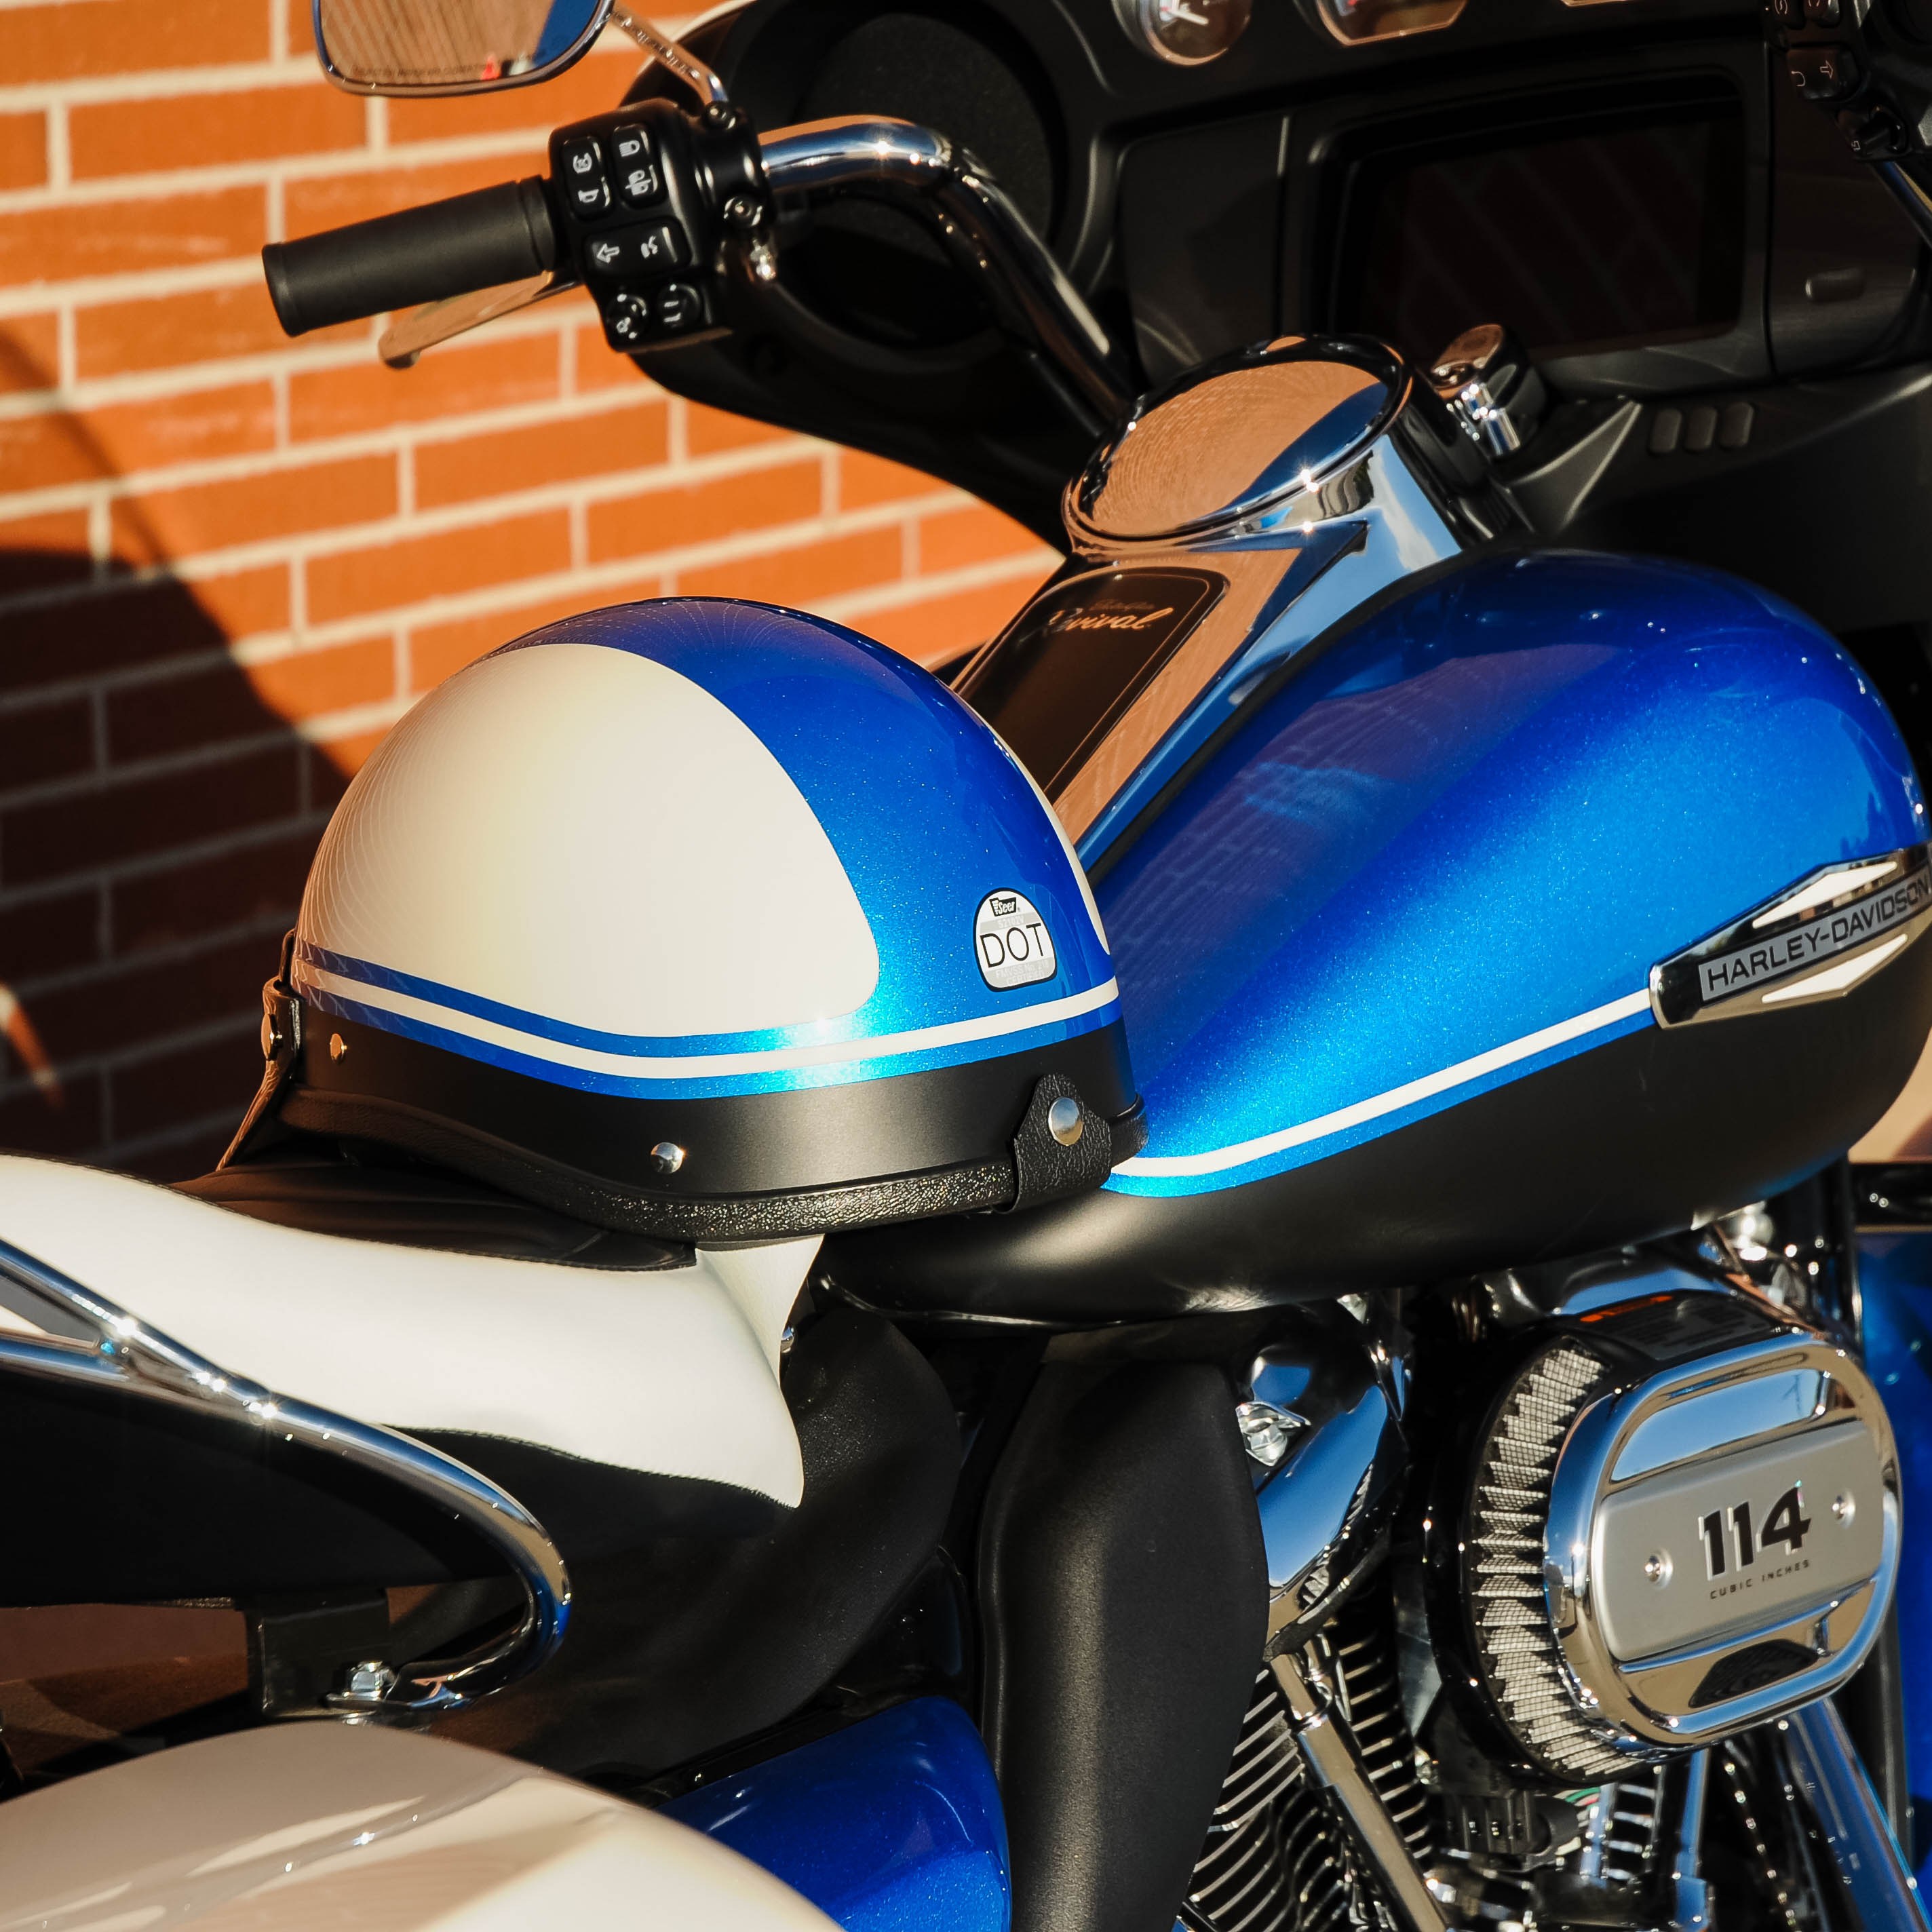 Super Seer, Custom, Color Matched, Harley-Davidson Electra Glide Revival Hi-Fi Blue with Birch White and Denim Vivid Black Revival Trim, Carbon Fiber Motorcycle Helmet